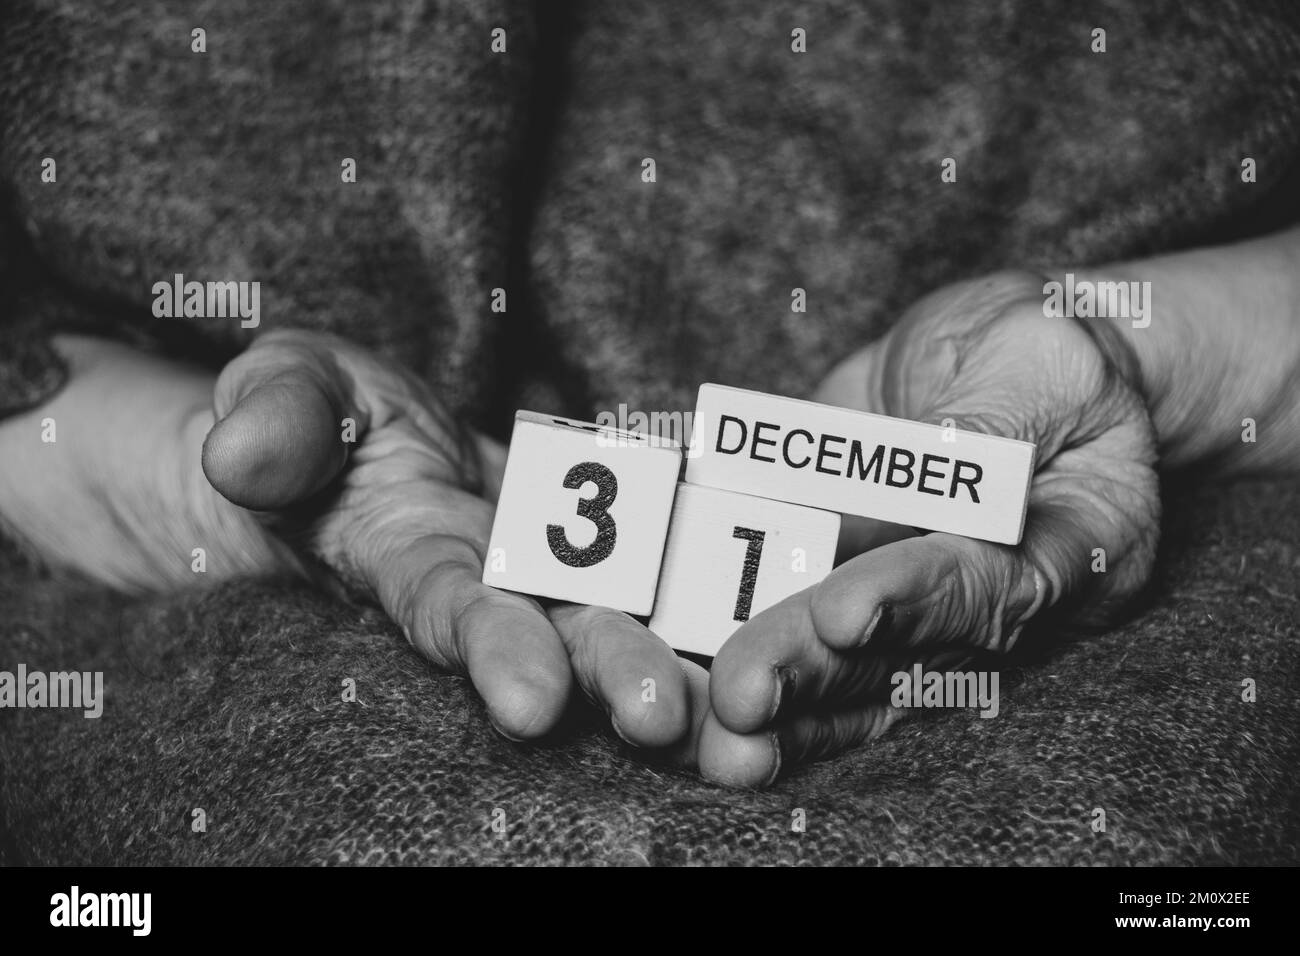 Dicembre 31 è scritto sui cubi che una vecchia donna tiene in mano, foto in bianco e nero, vacanza Foto Stock